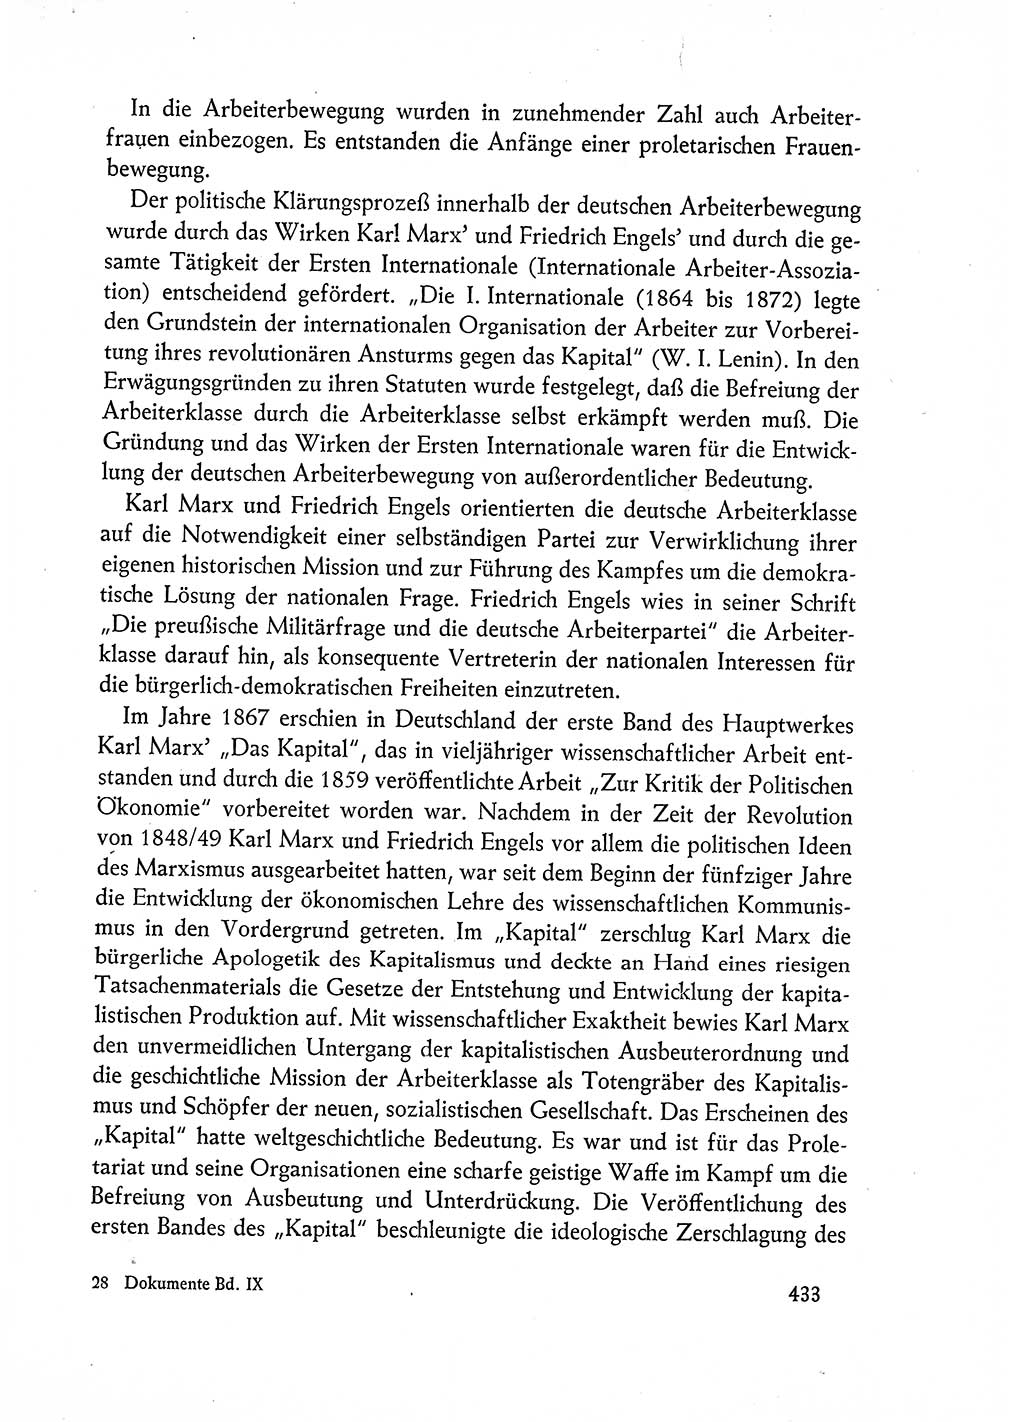 Dokumente der Sozialistischen Einheitspartei Deutschlands (SED) [Deutsche Demokratische Republik (DDR)] 1962-1963, Seite 433 (Dok. SED DDR 1962-1963, S. 433)